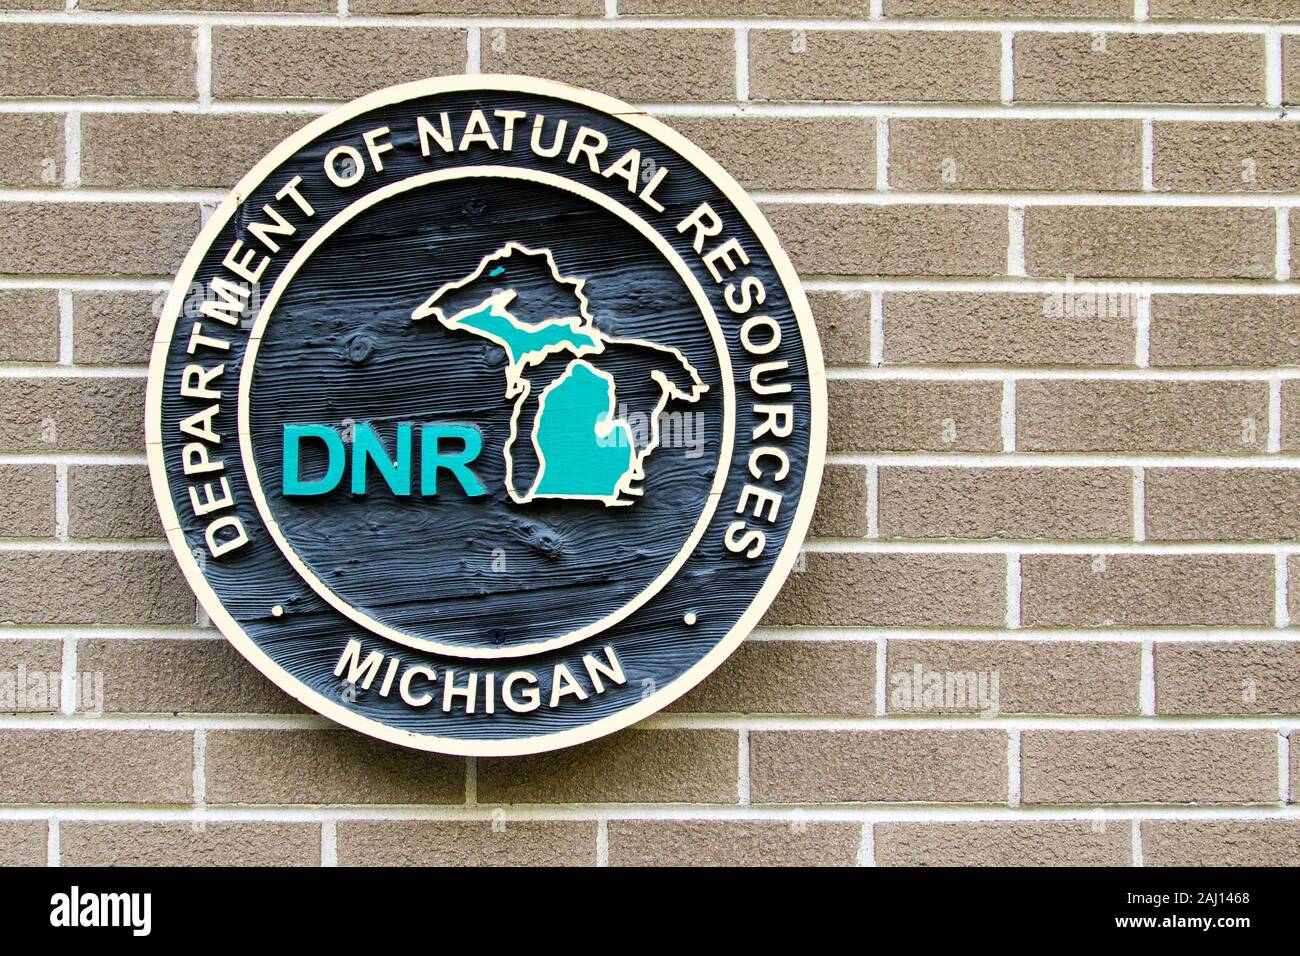 Muskegon, Michigan, USA - 6 octobre, 2019 : Département des ressources naturelles du Michigan emblème sur un bâtiment du parc d'État du Michigan. Banque D'Images